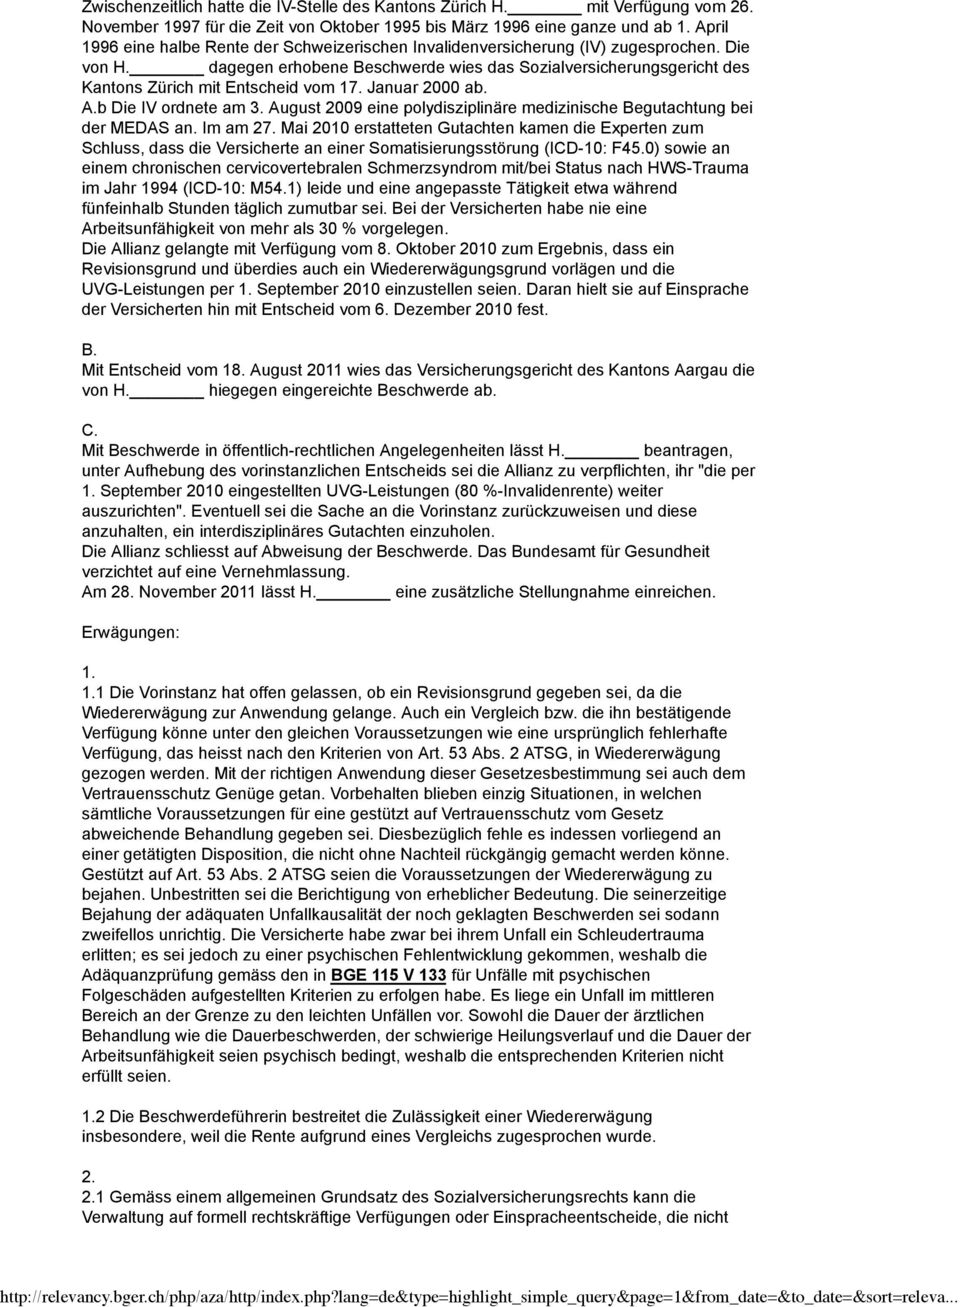 dagegen erhobene Beschwerde wies das Sozialversicherungsgericht des Kantons Zürich mit Entscheid vom 17. Januar 2000 ab. A.b Die IV ordnete am 3.